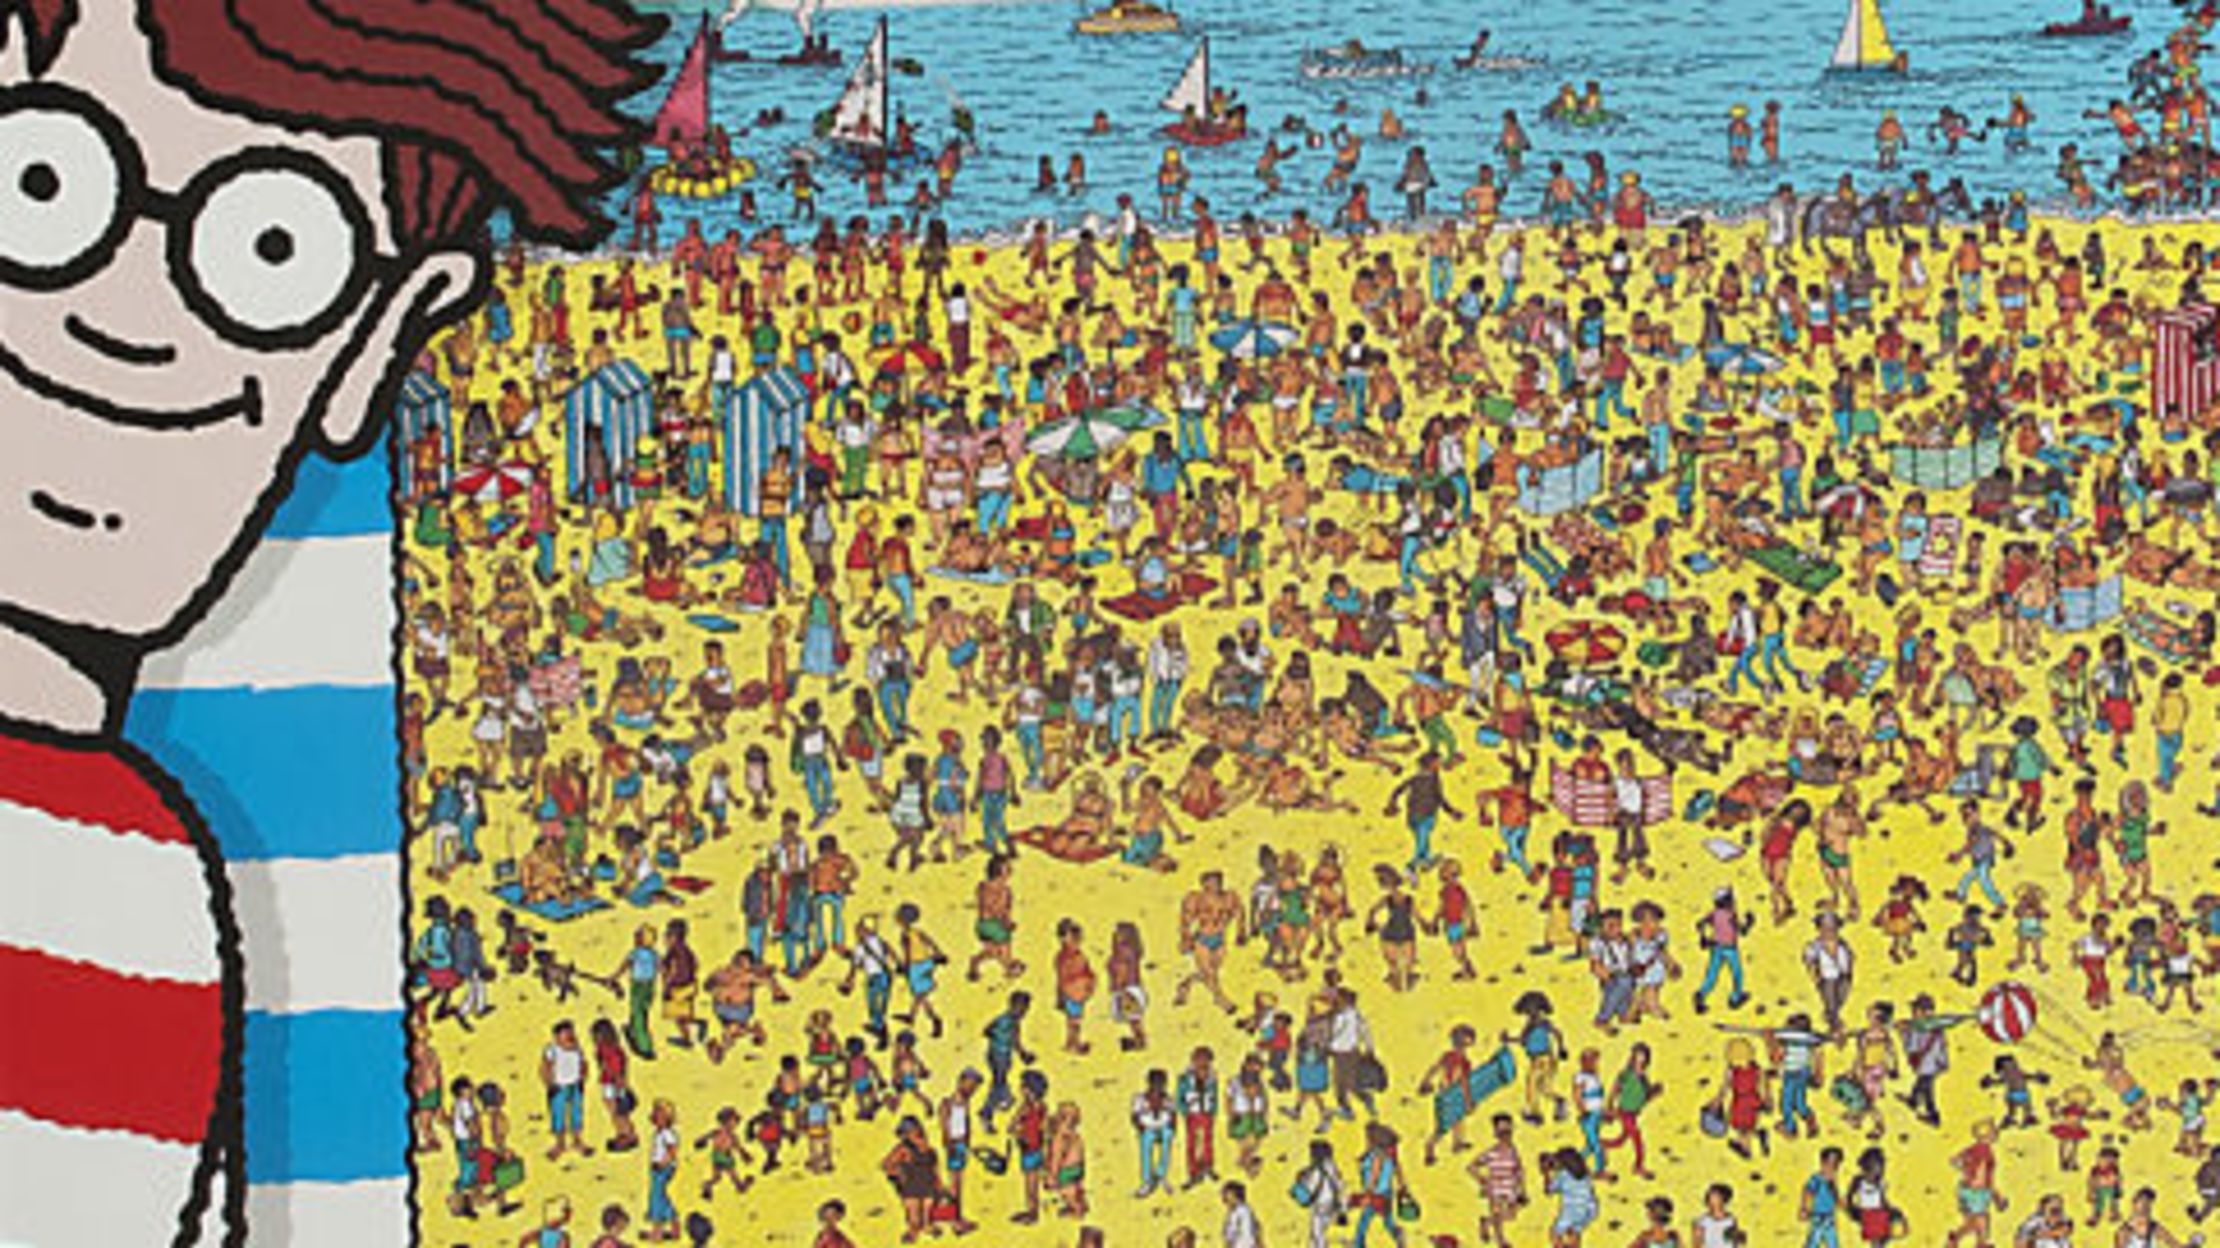 St Martin Nude Beach Sex - Waldo's Topless Beach Scandal | Mental Floss